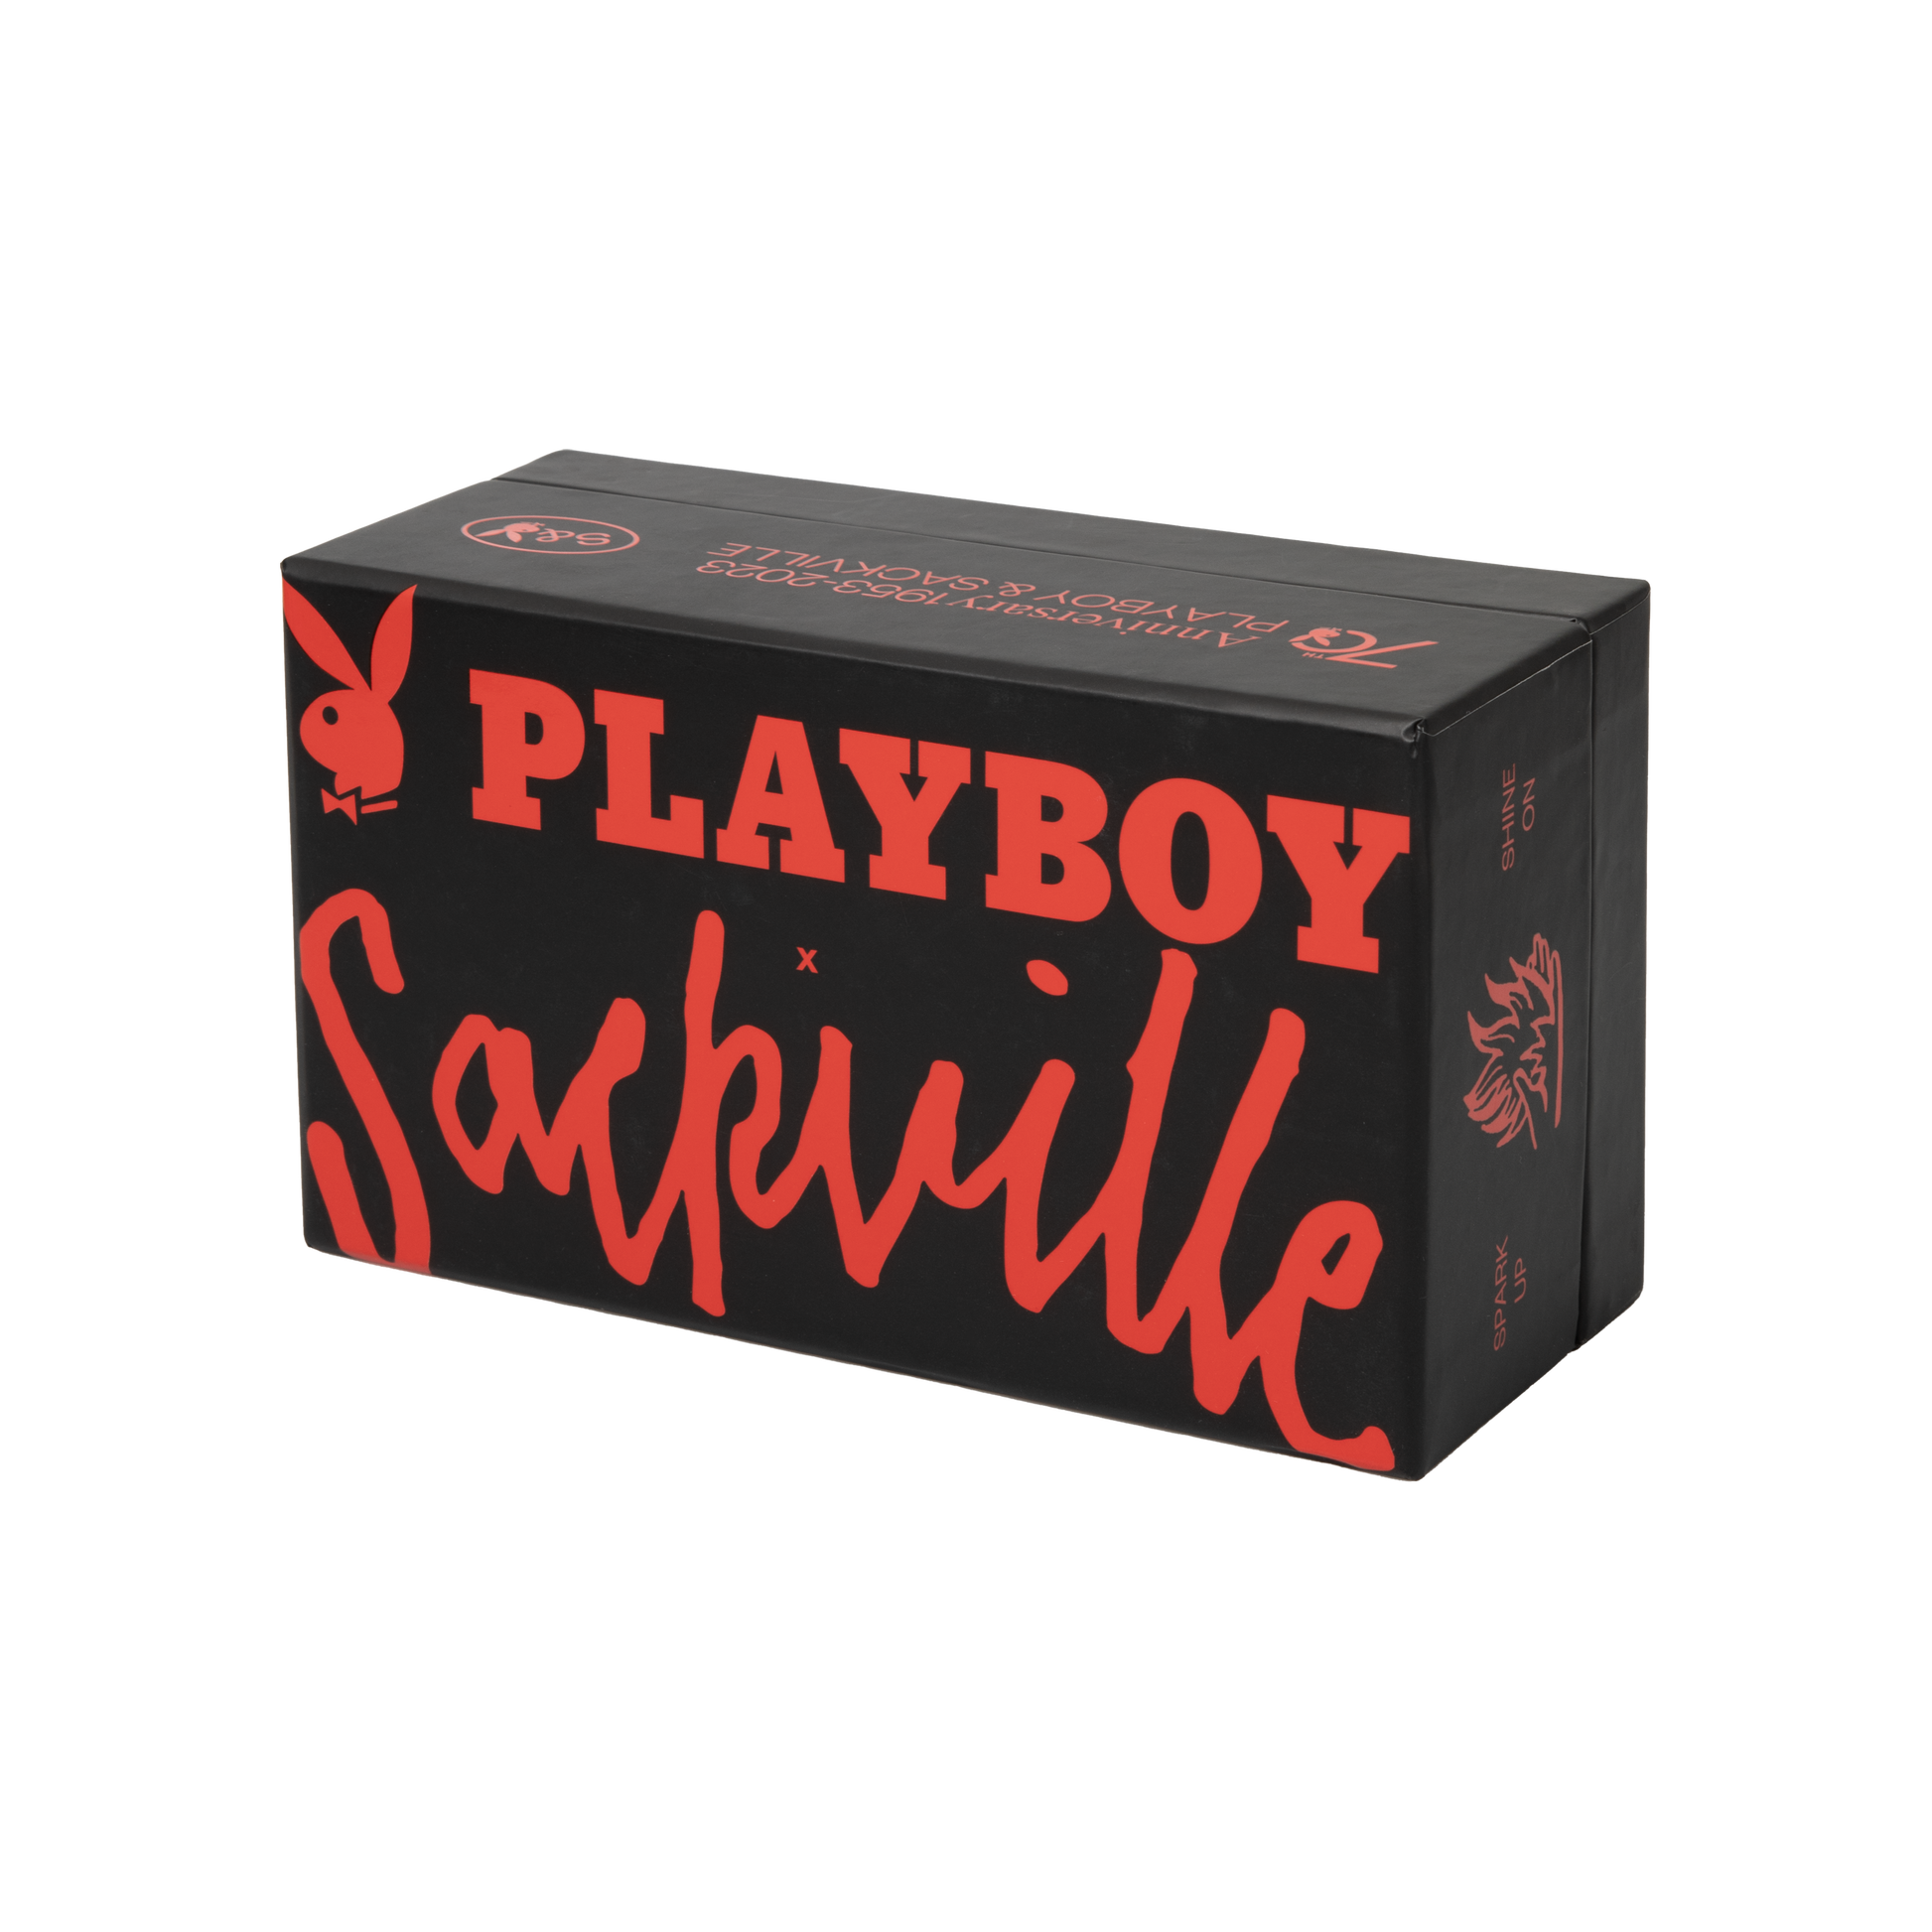 Playboy X Sackville Crystal Ball Pipe - Sackville & Co.